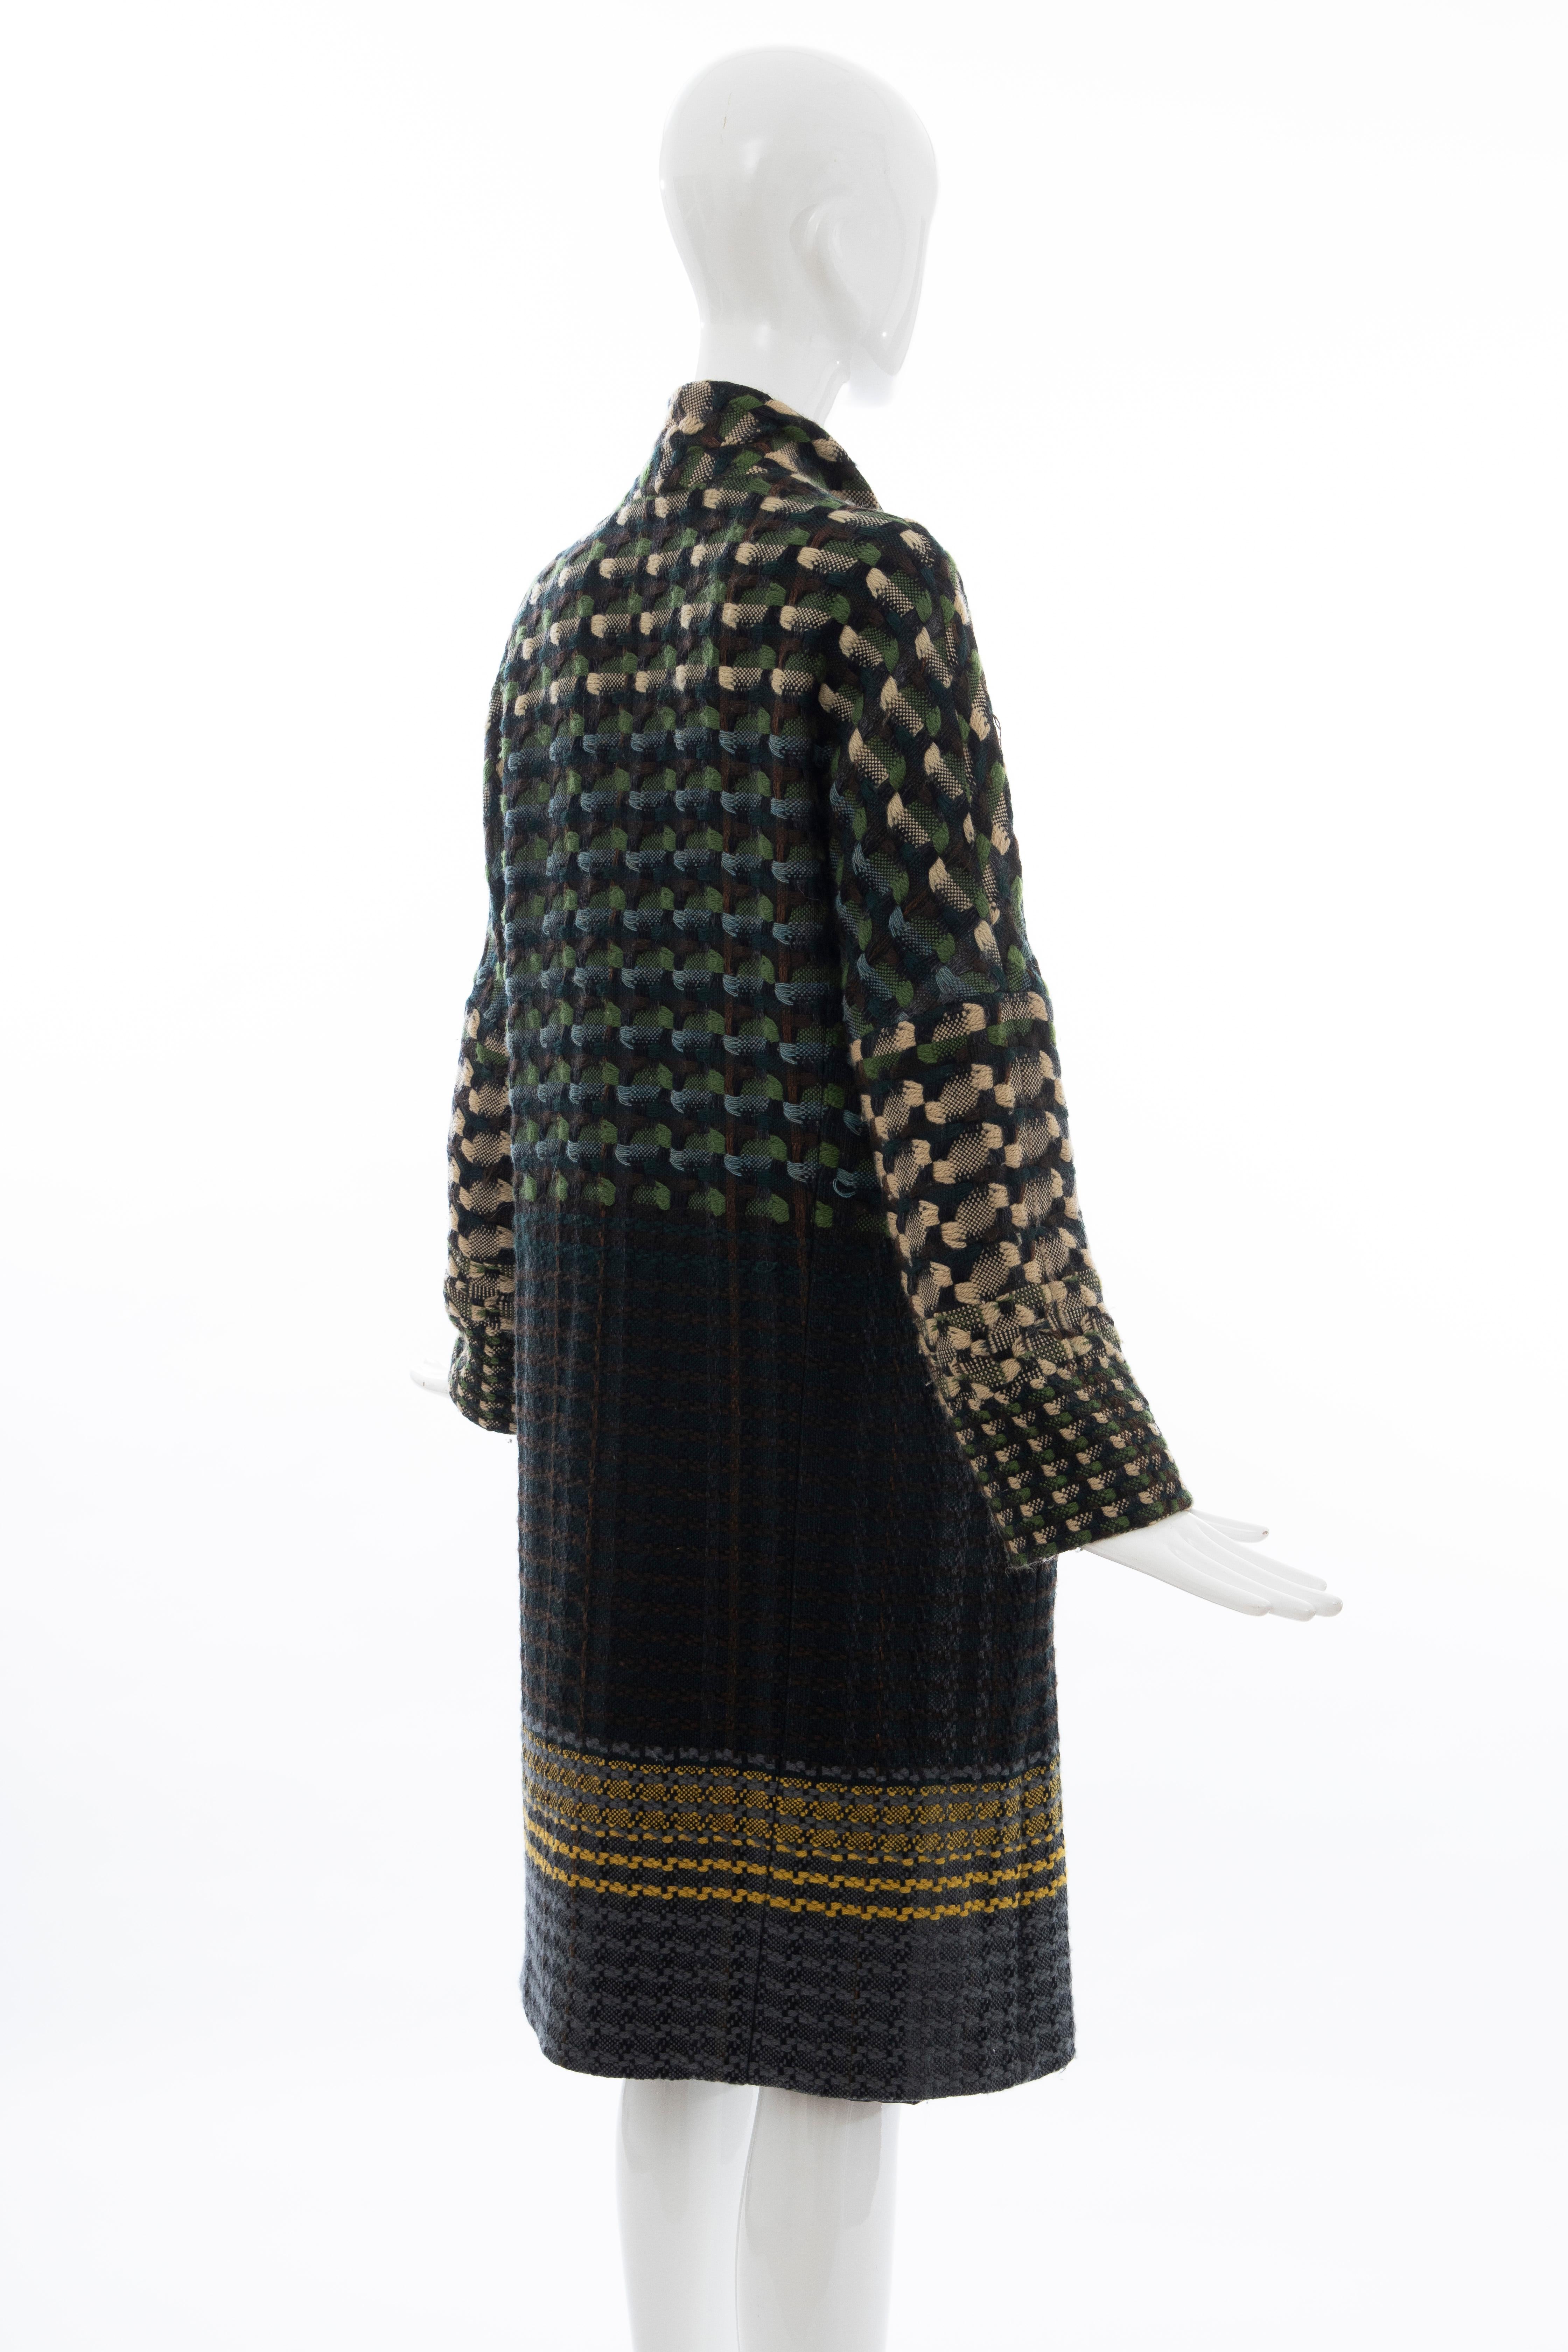 Dries van Noten Runway Wool Plain Weave Tweed Coat, Fall 2004 For Sale 1